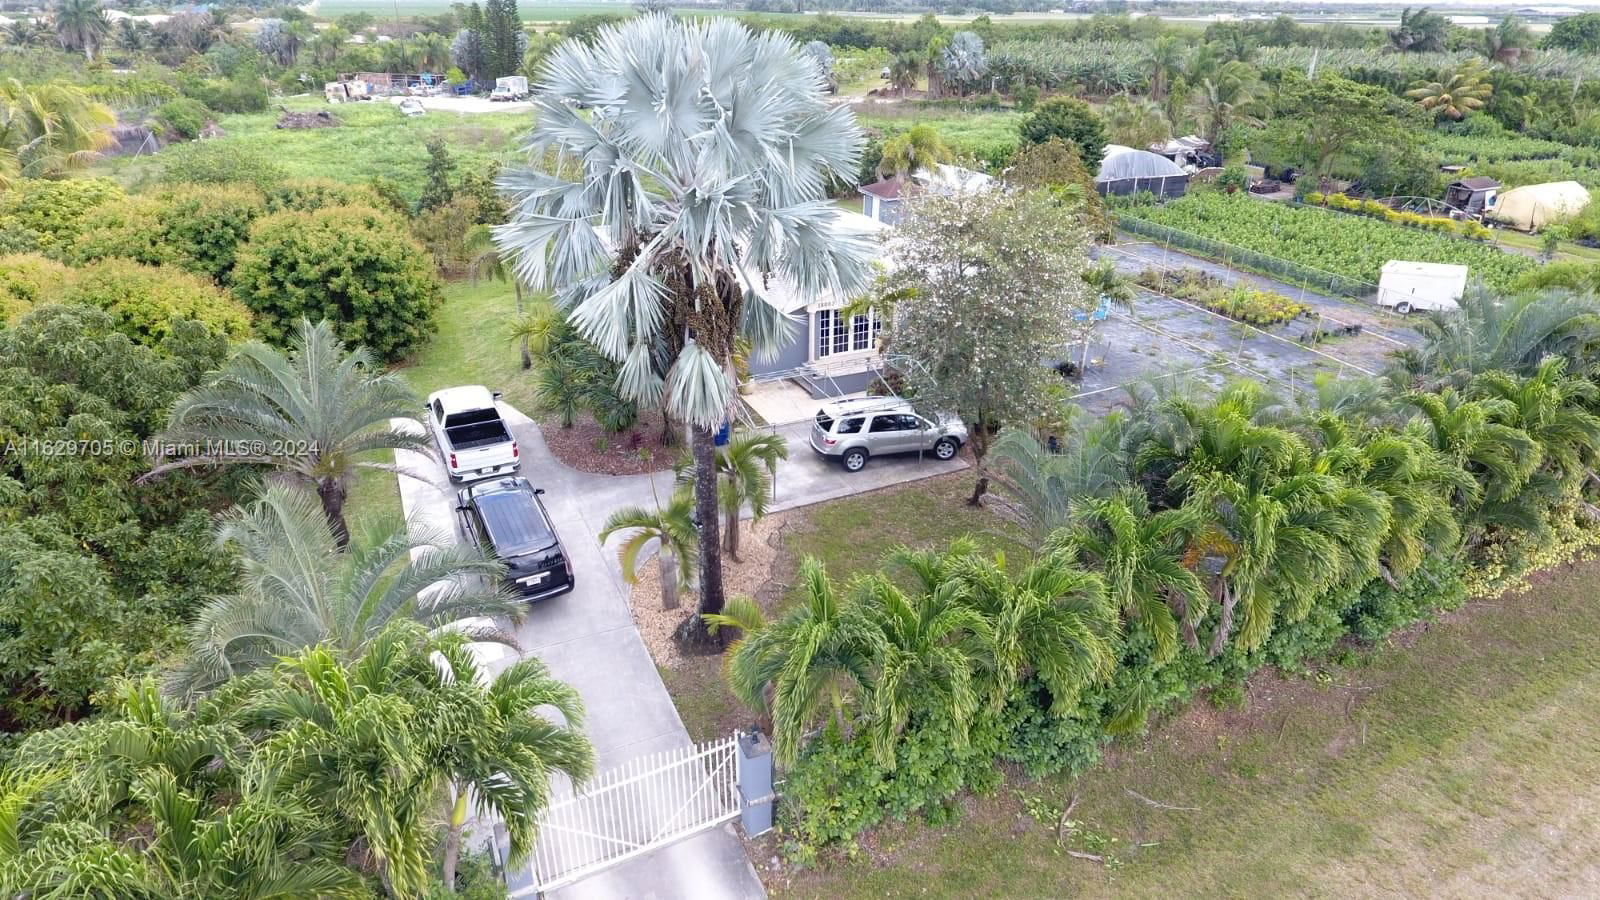 Real estate property located at 16003 196th Ave, Miami-Dade County, Acreage, Miami, FL